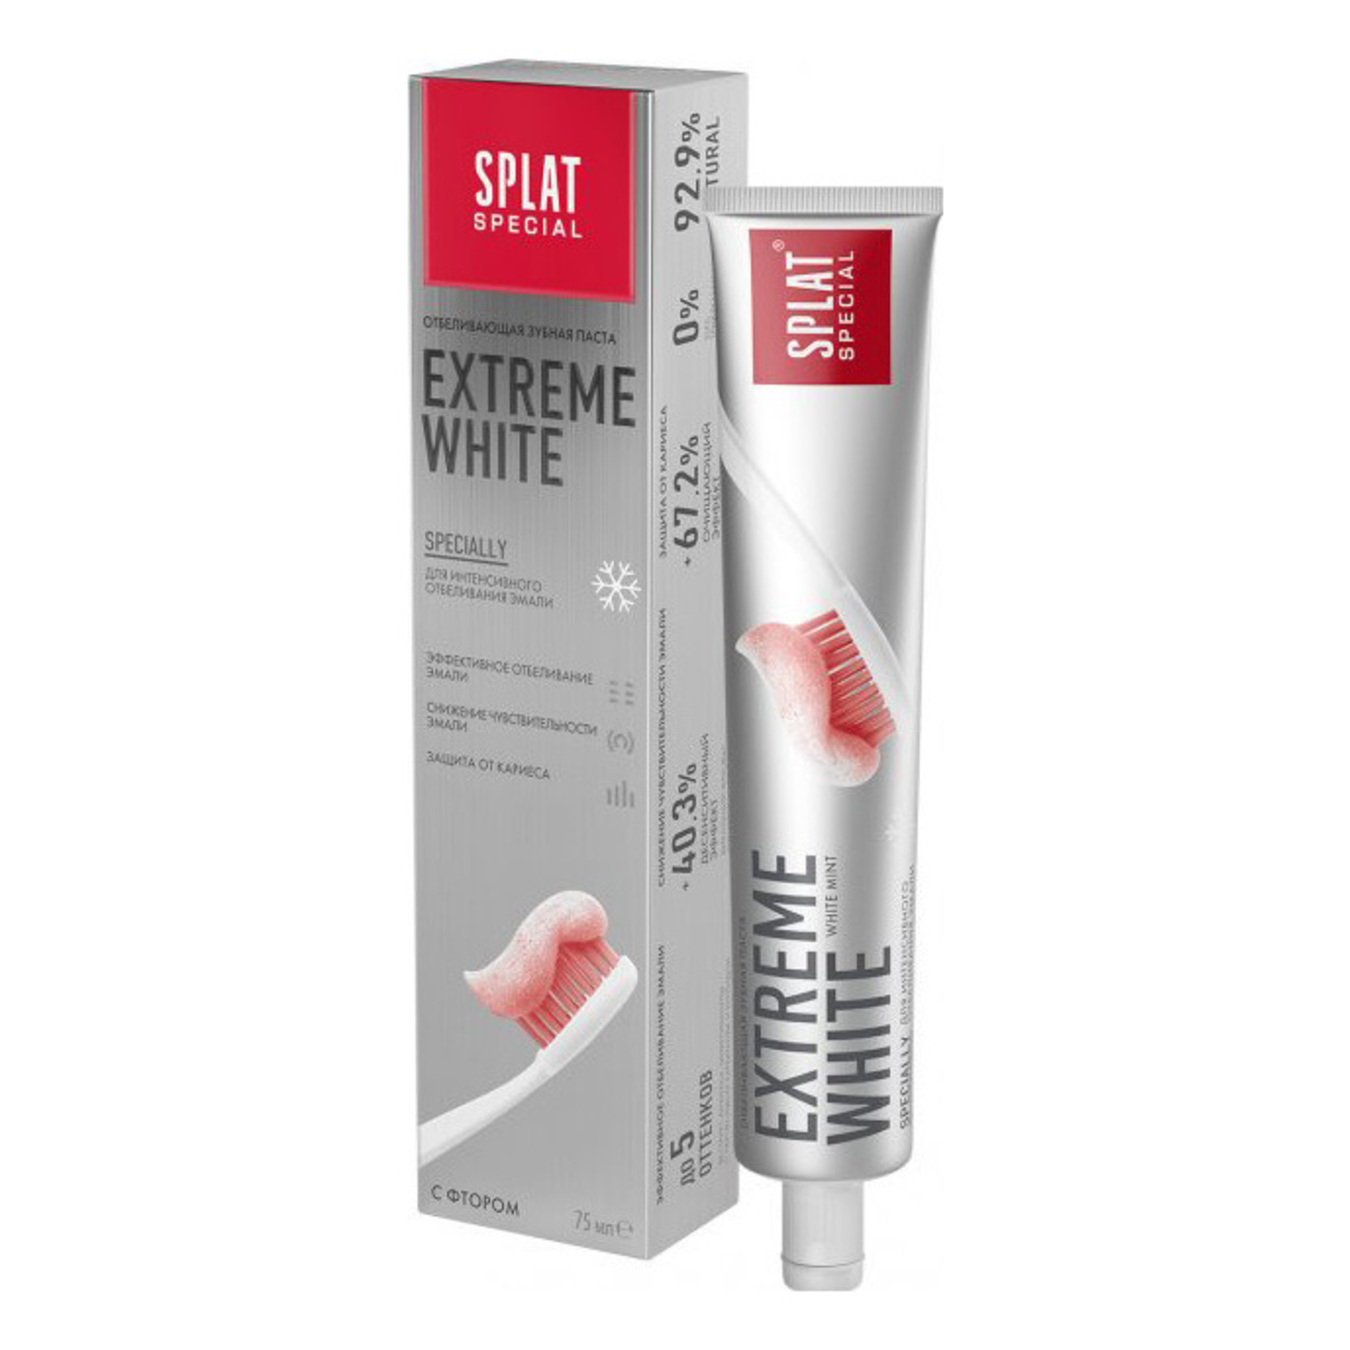 Splat Special Extreme White Whitening Toothpaste 75ml 2